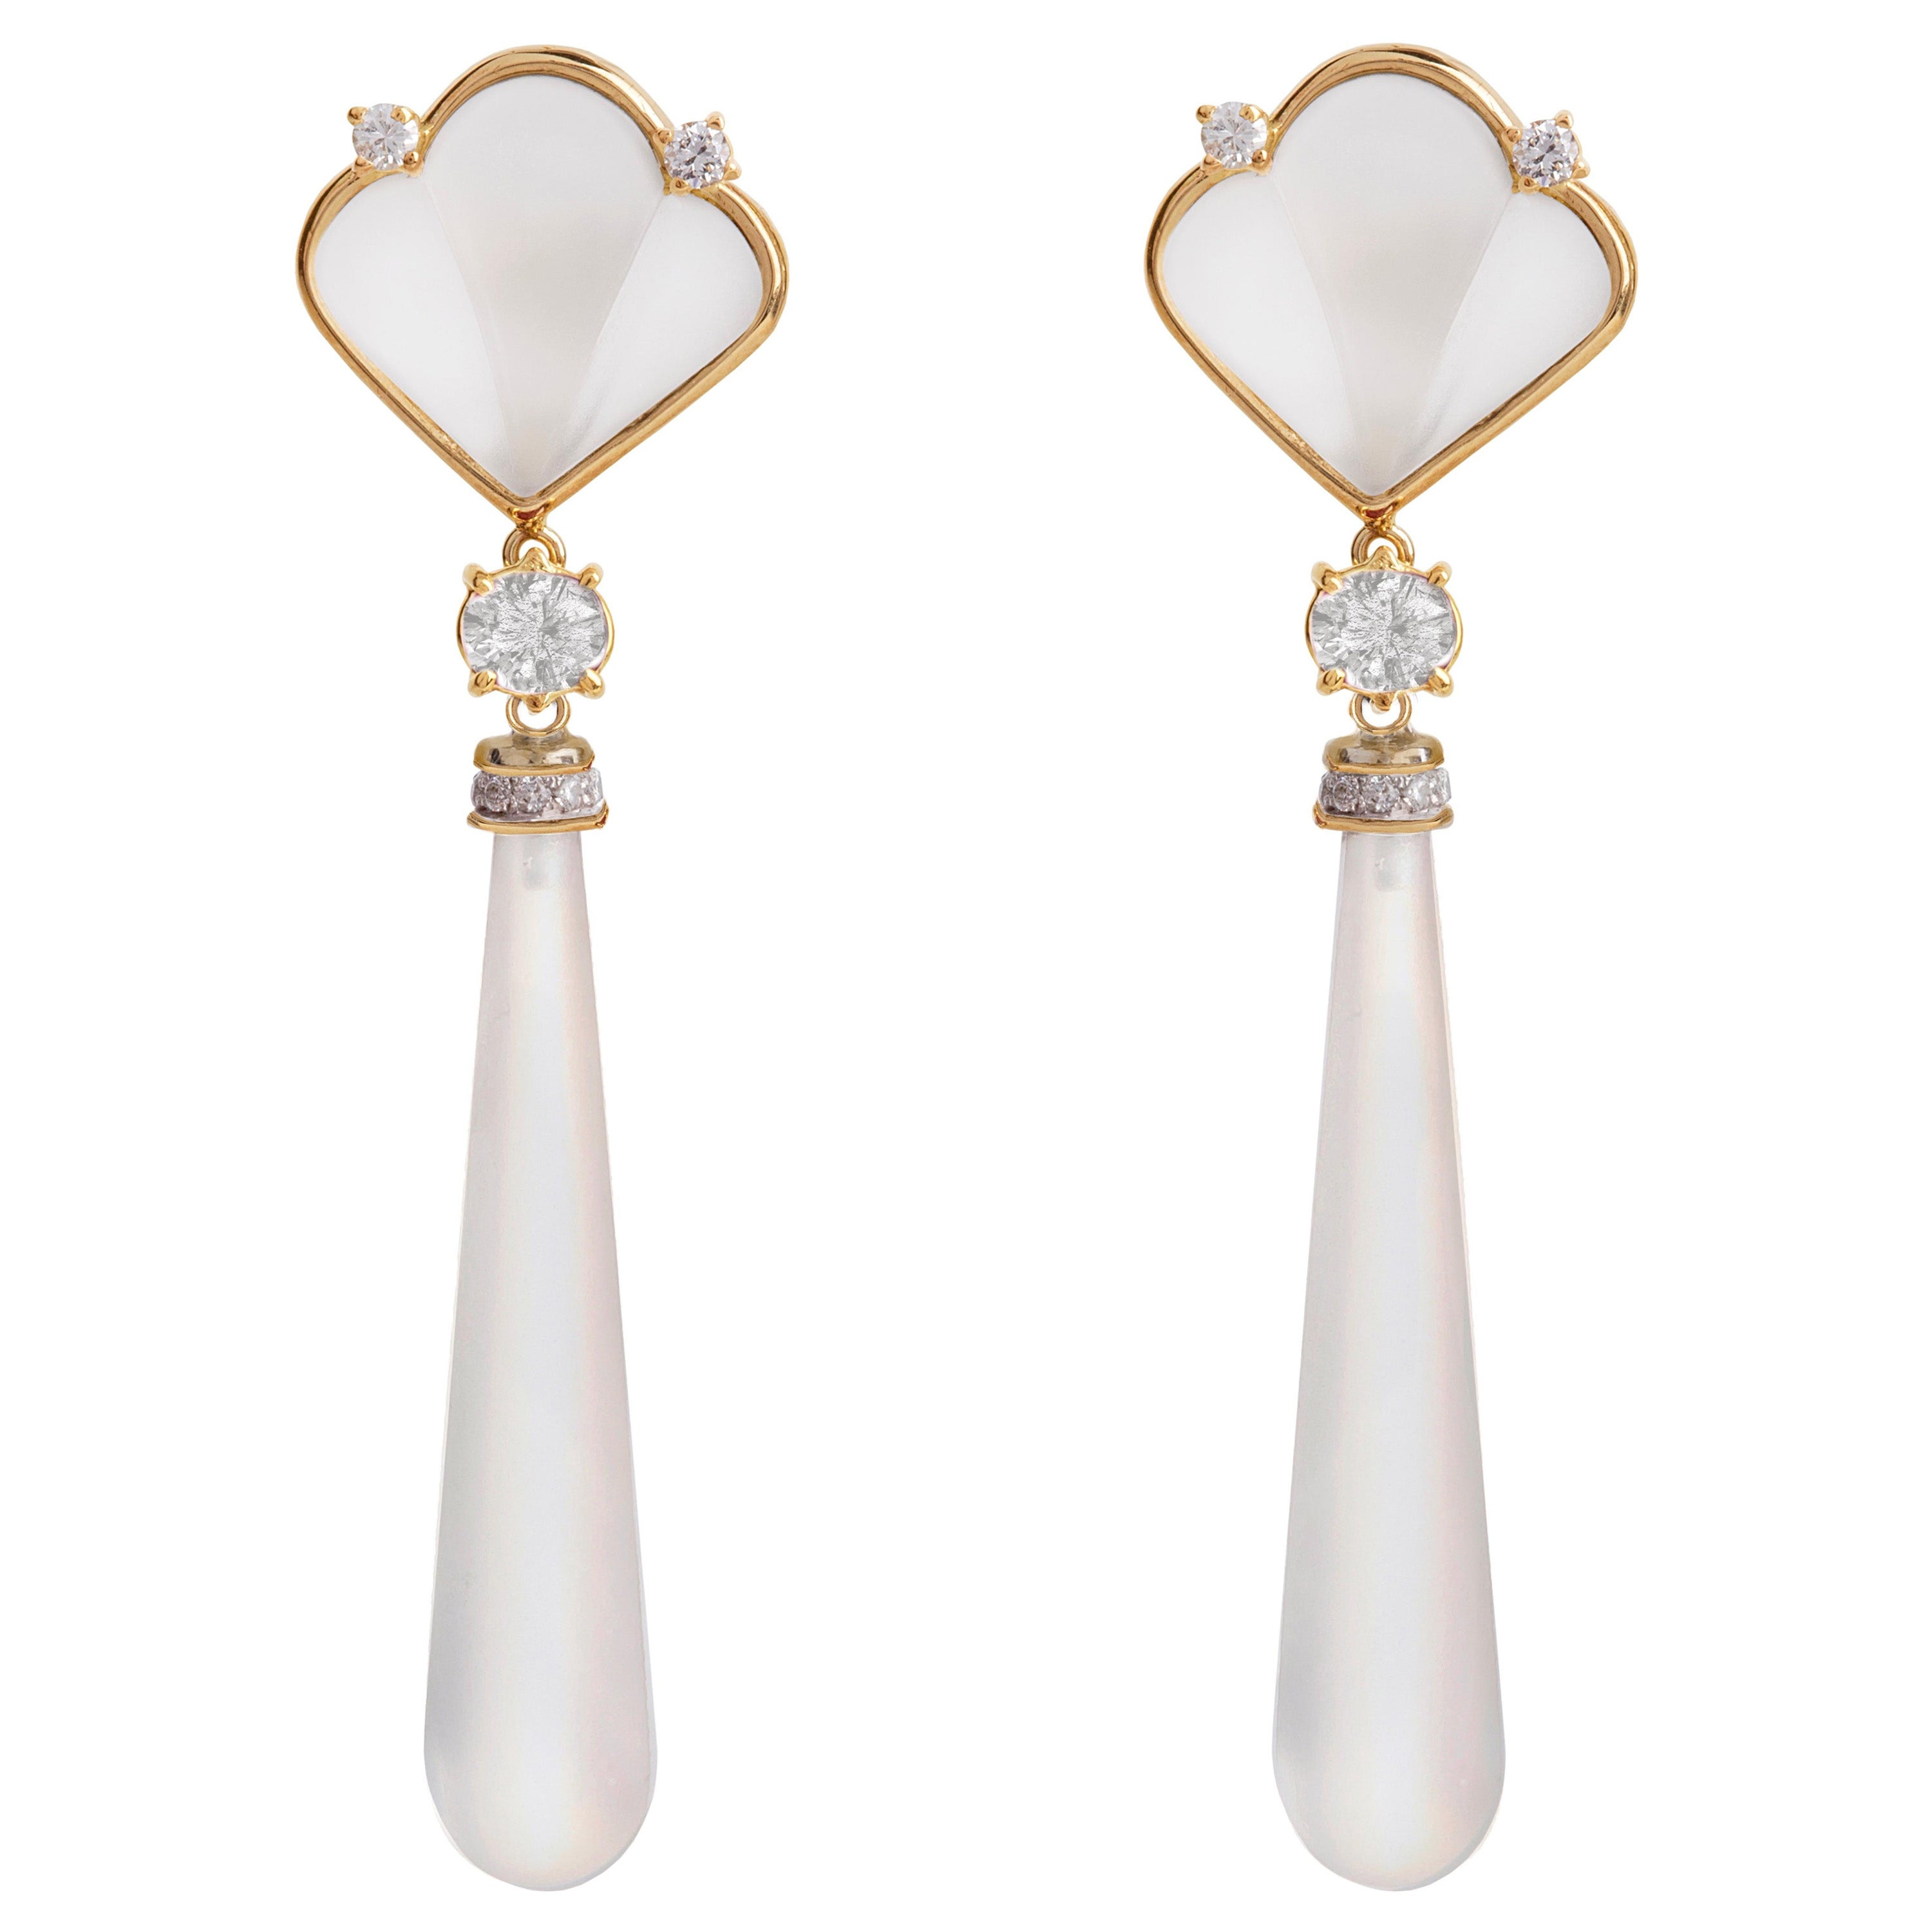 Rossella Ugolini Boucles d'oreilles style déco en or jaune 18K avec diamants blancs et cristaux de roche